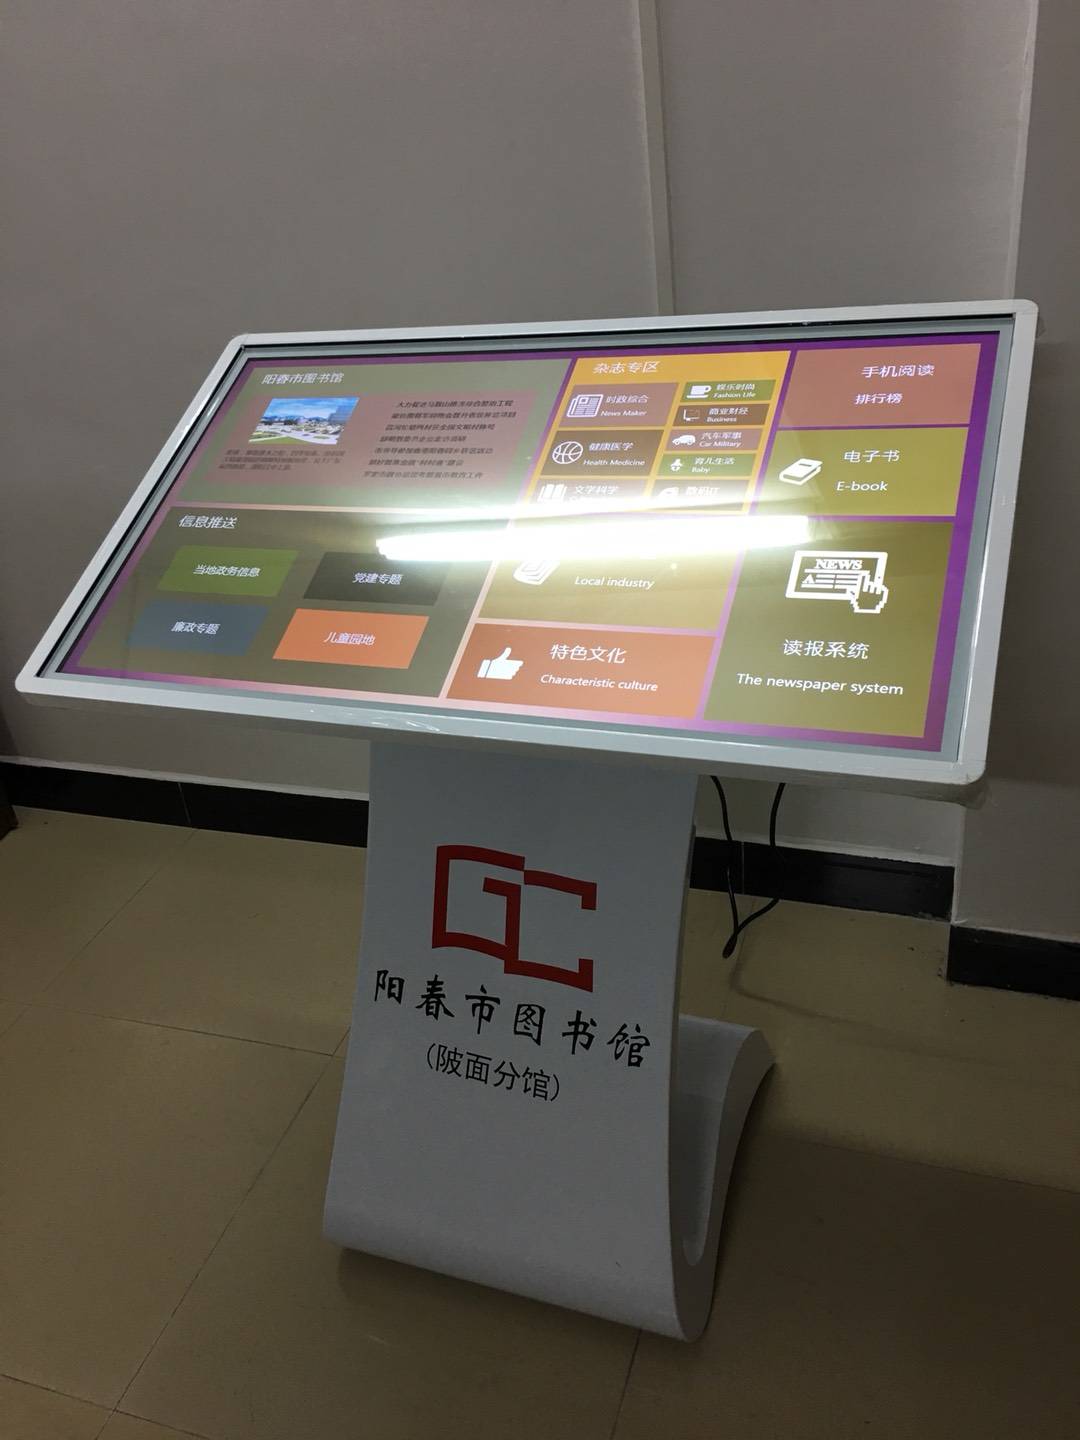 广东省各市县图书馆遍布图赞科技触摸一体机(图2)